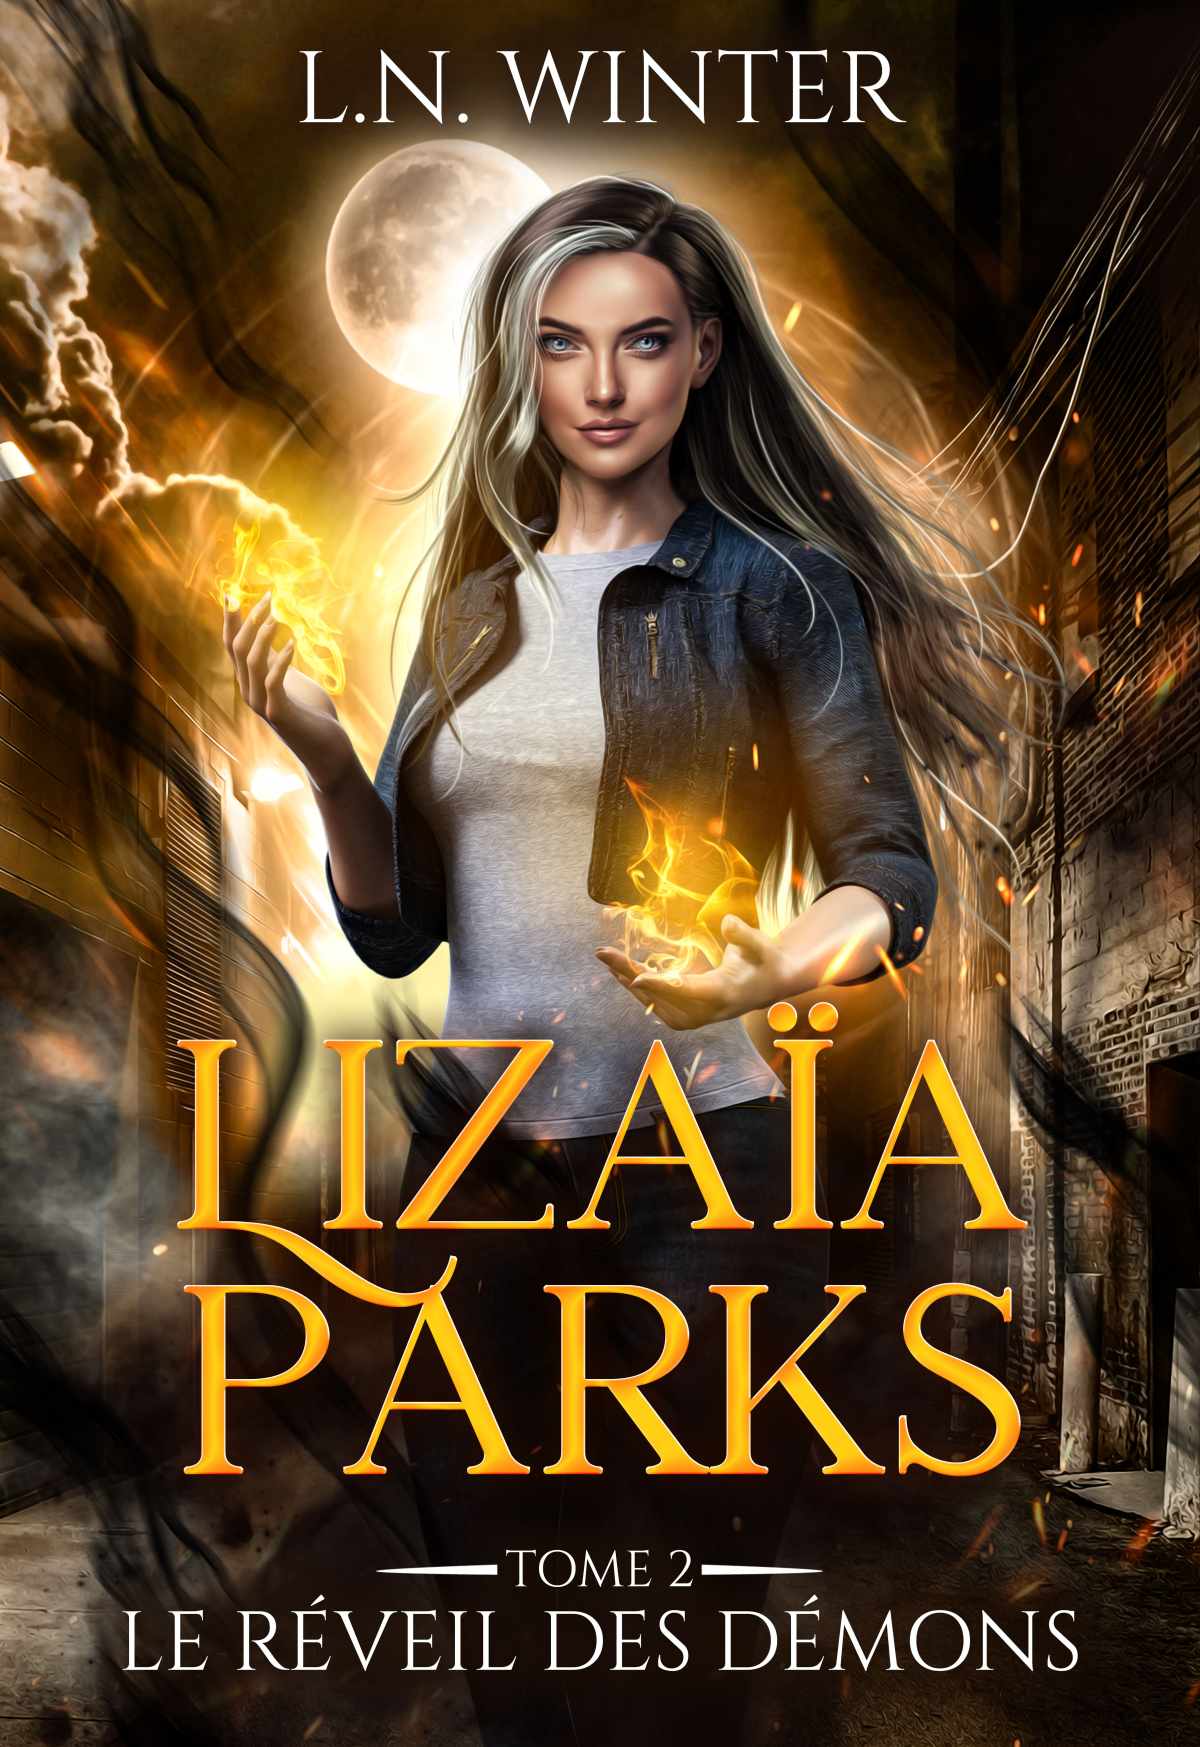 Lizaïa Parks – Tome II : Le réveil des démons de L.N. Winter